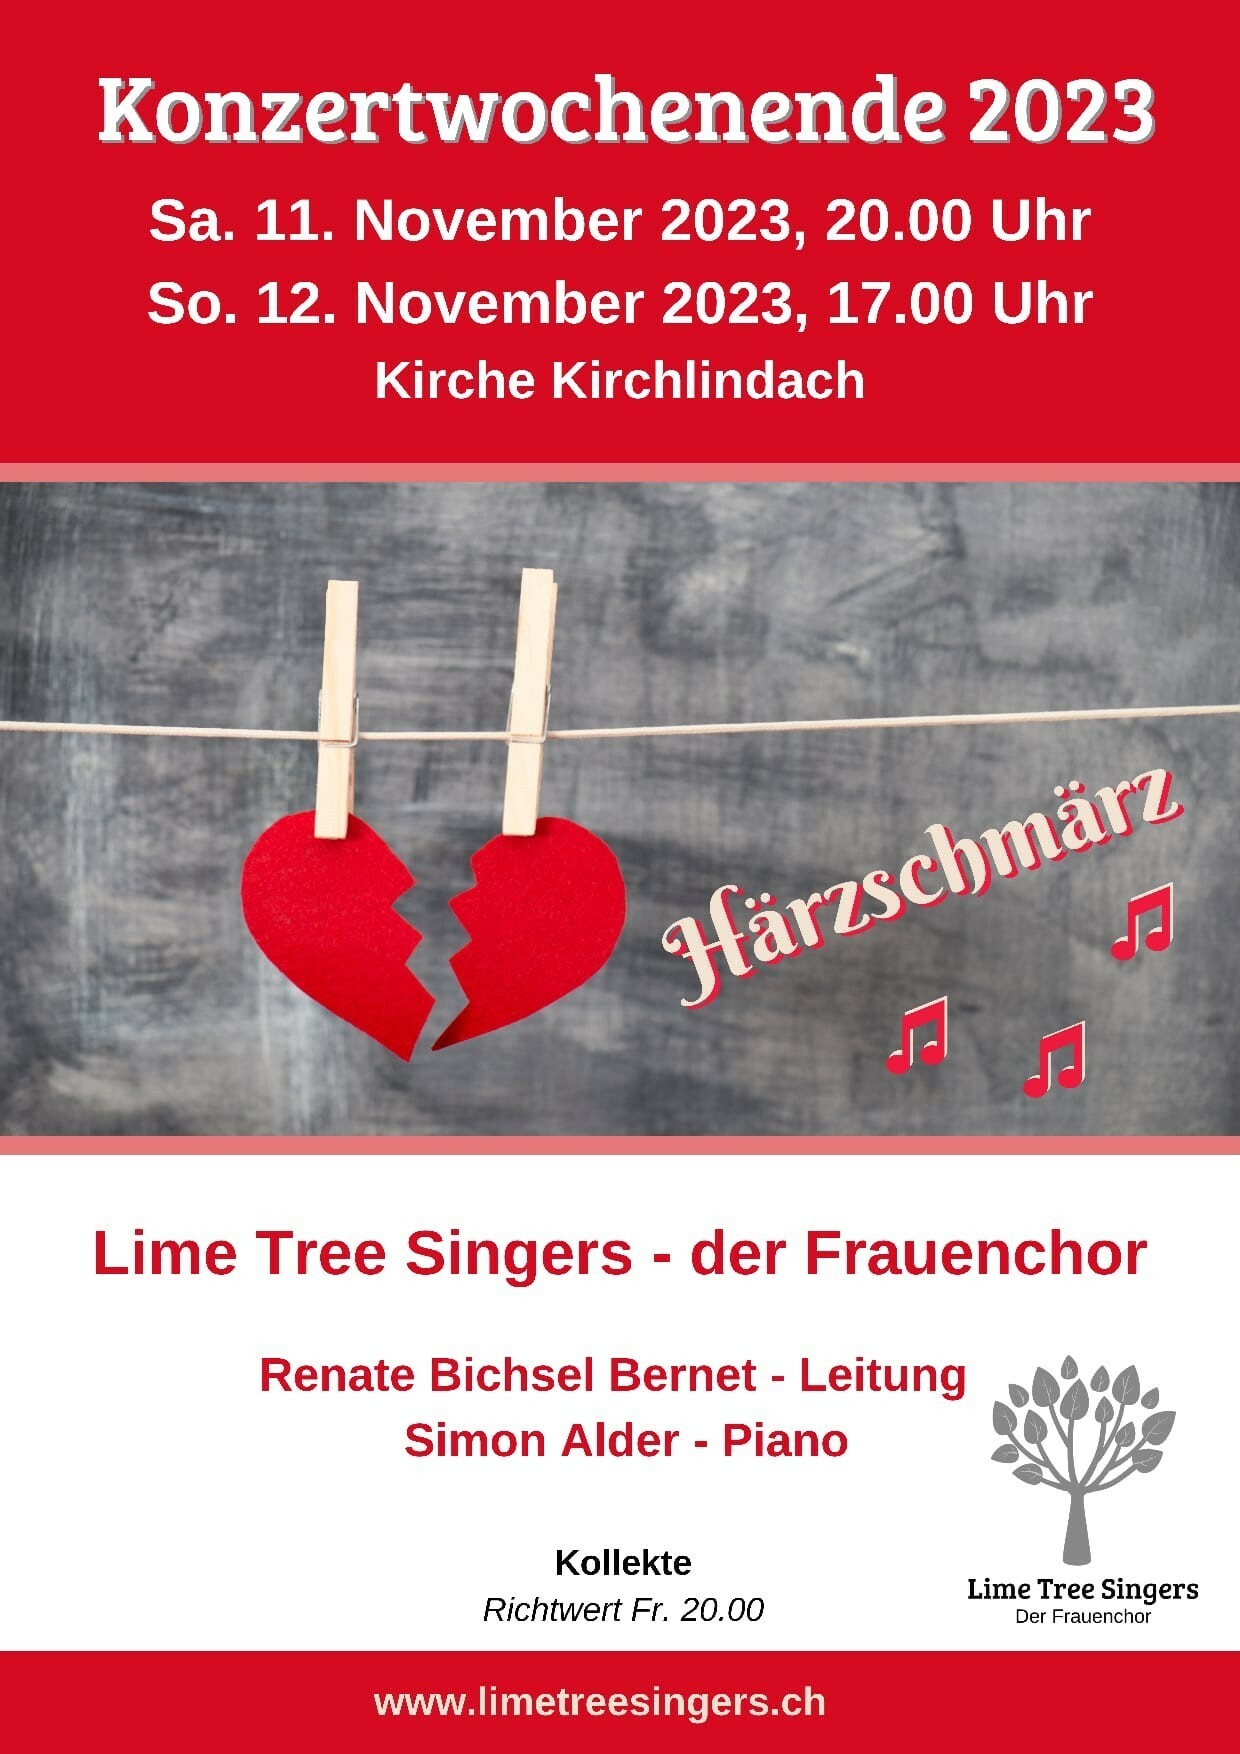 Konzertwochende 2023; Lime Tree Singers